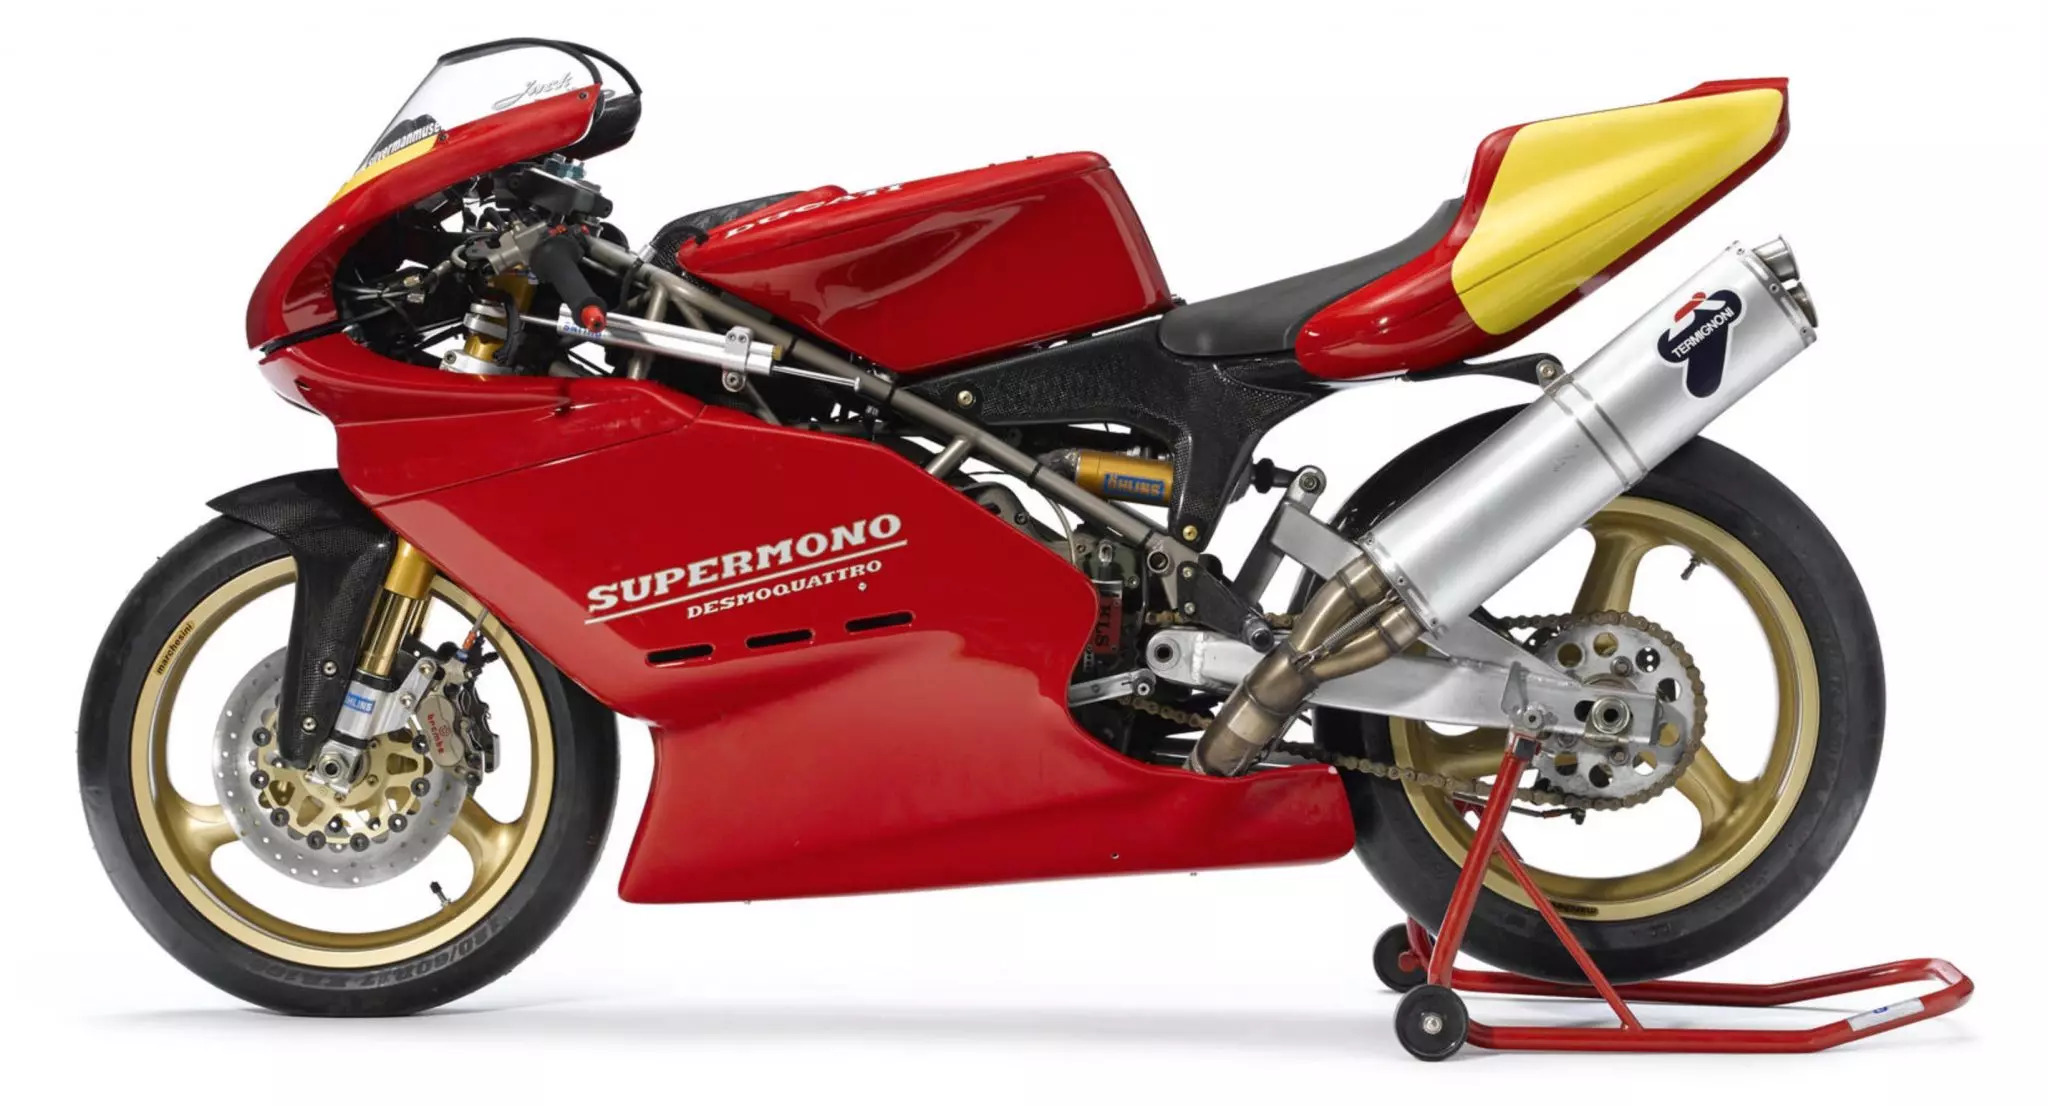 A 1993 Supermono from Ducati